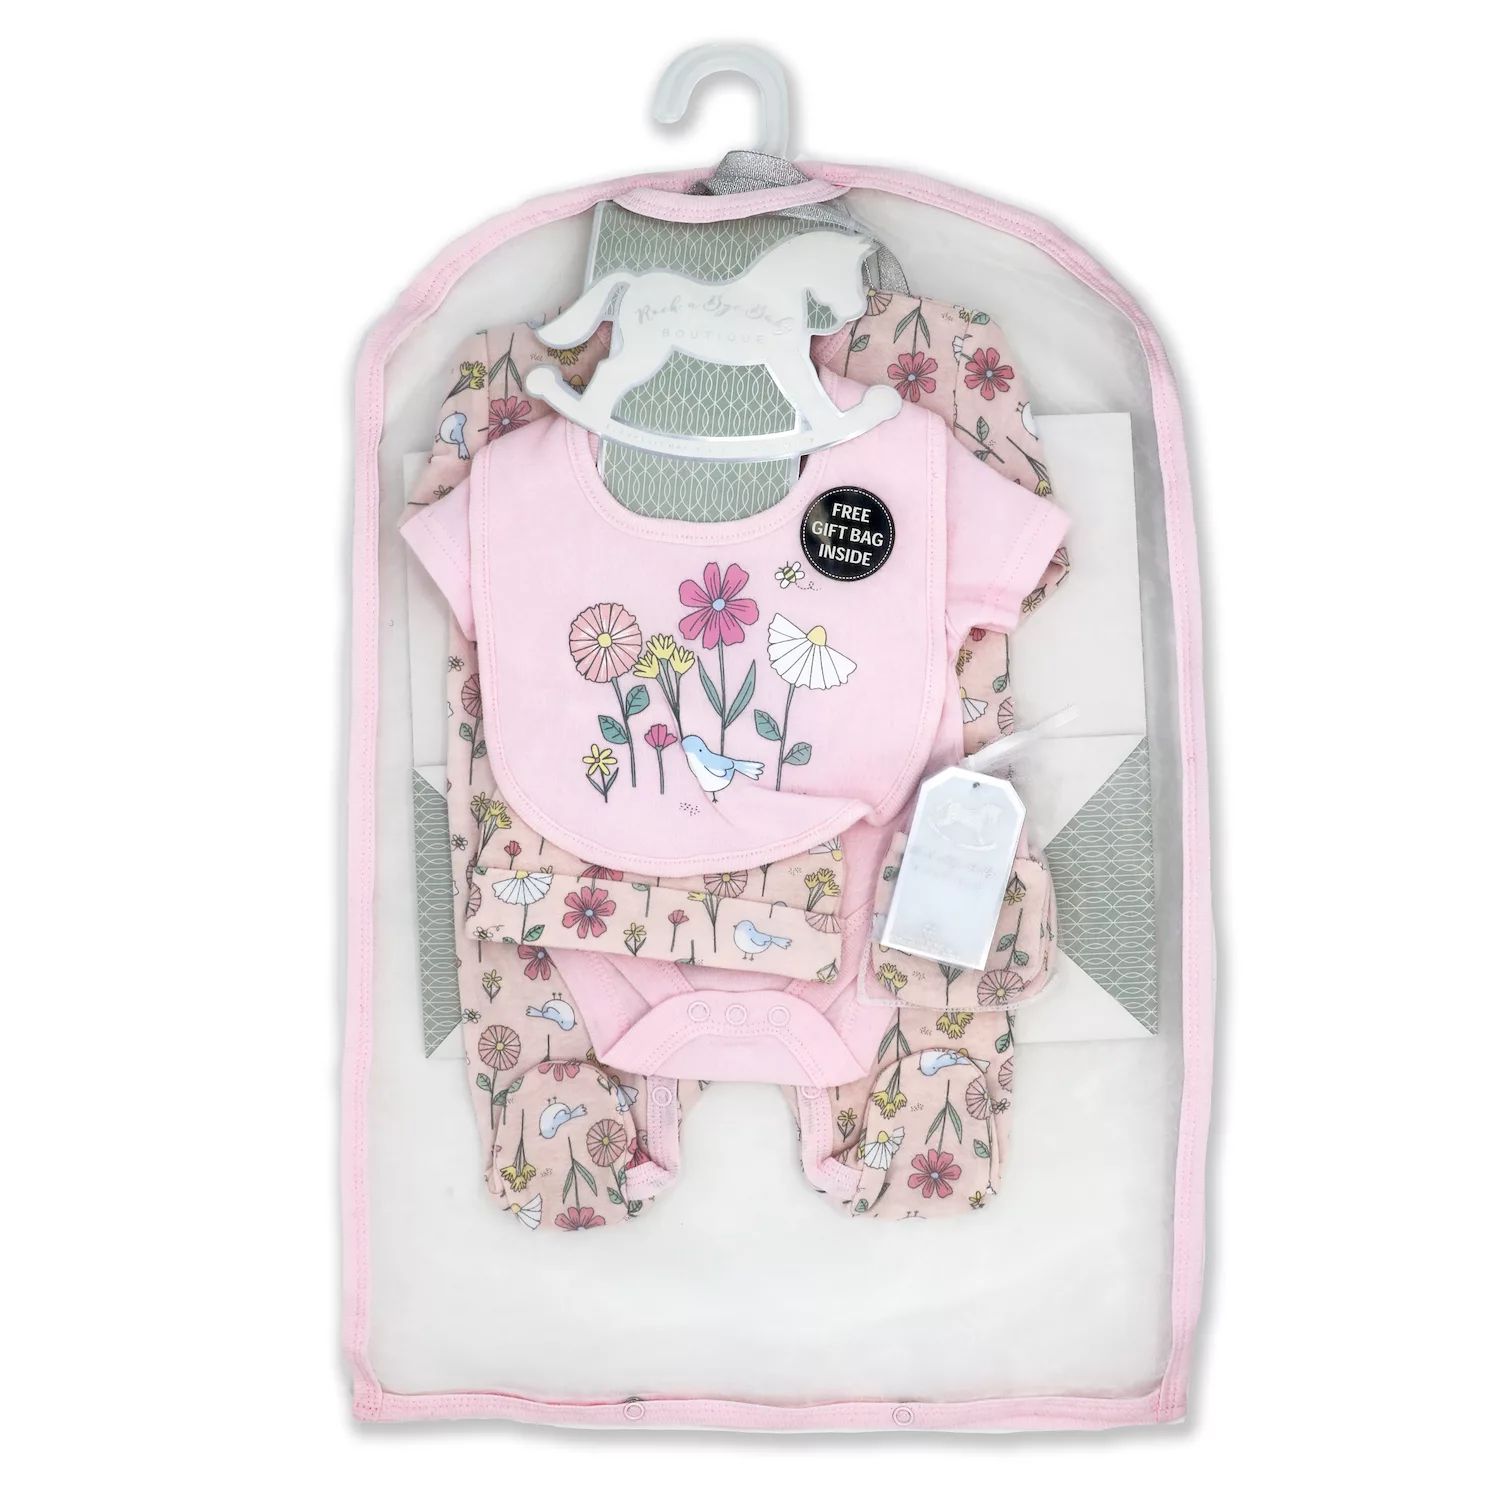 bye bye paris mother baby care bag hi̇gh quality warranty period month 12 Подарочный набор из 5 предметов с цветочным принтом для маленьких девочек в сетчатой ​​сумке Rock A Bye Baby Boutique